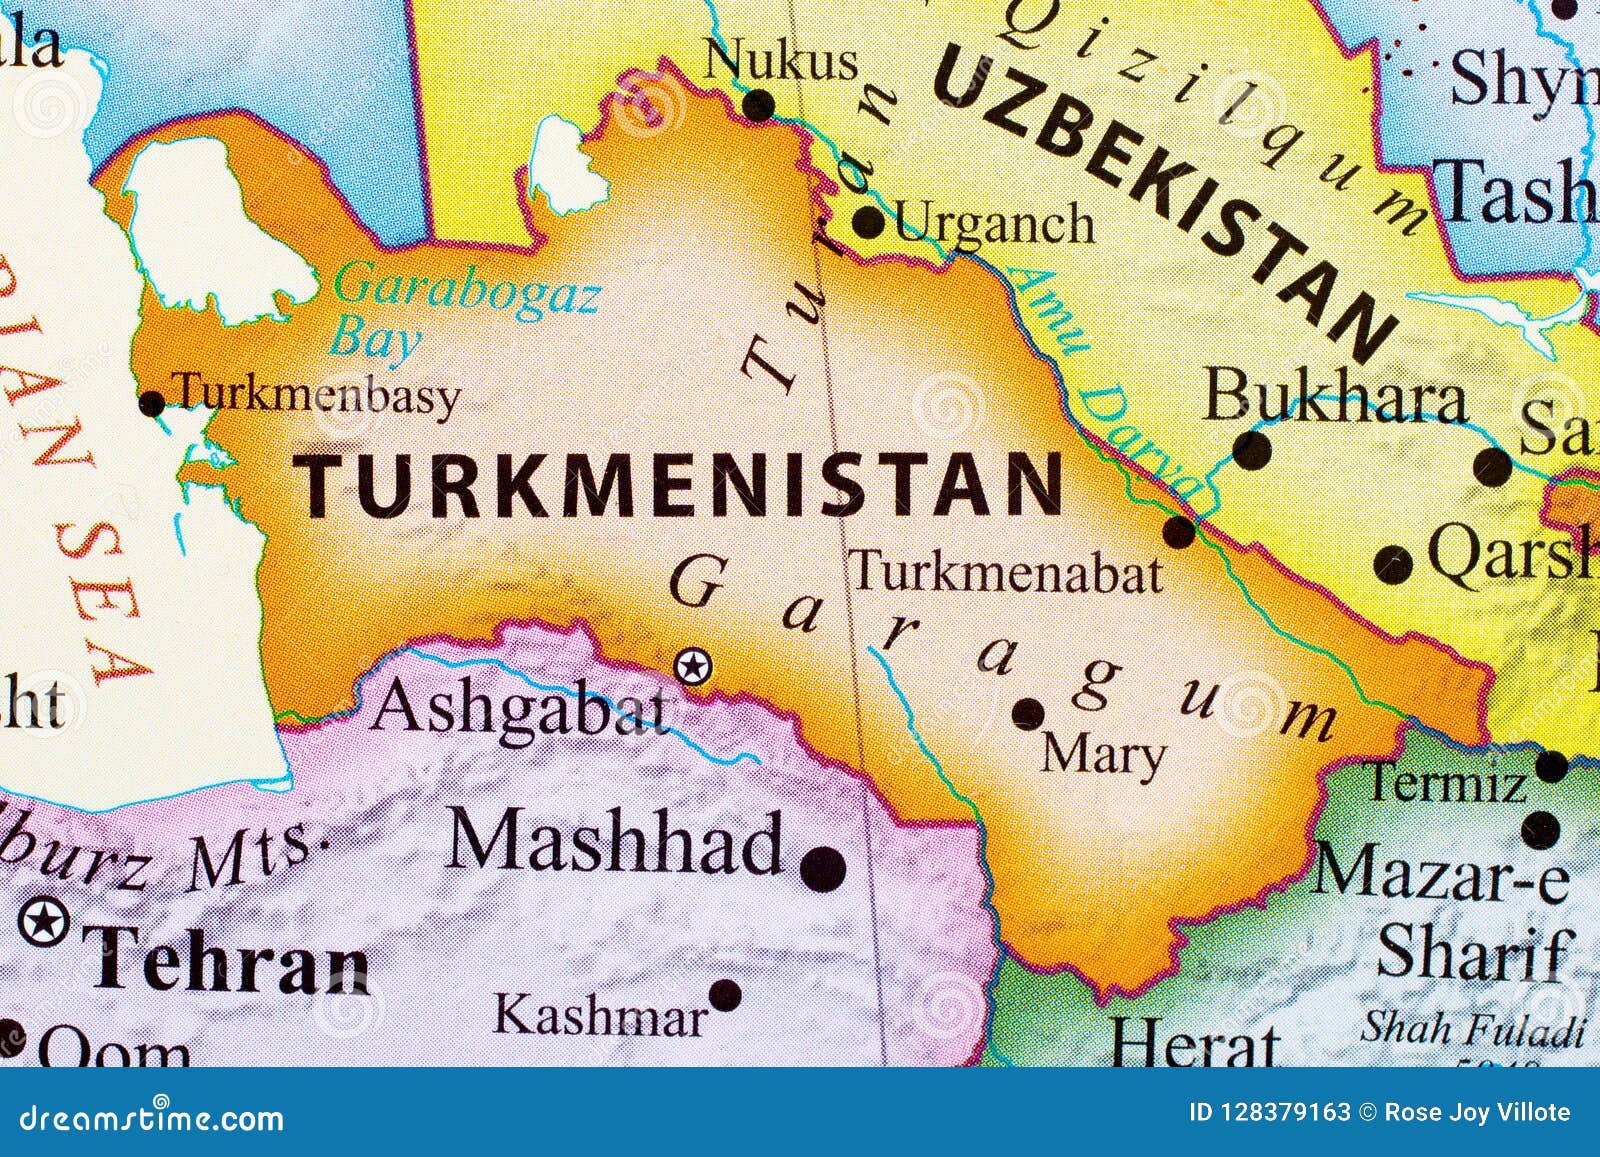 土库曼斯坦议长与两家乌建筑公司负责人举行会谈 - 2022年5月26日, 俄罗斯卫星通讯社